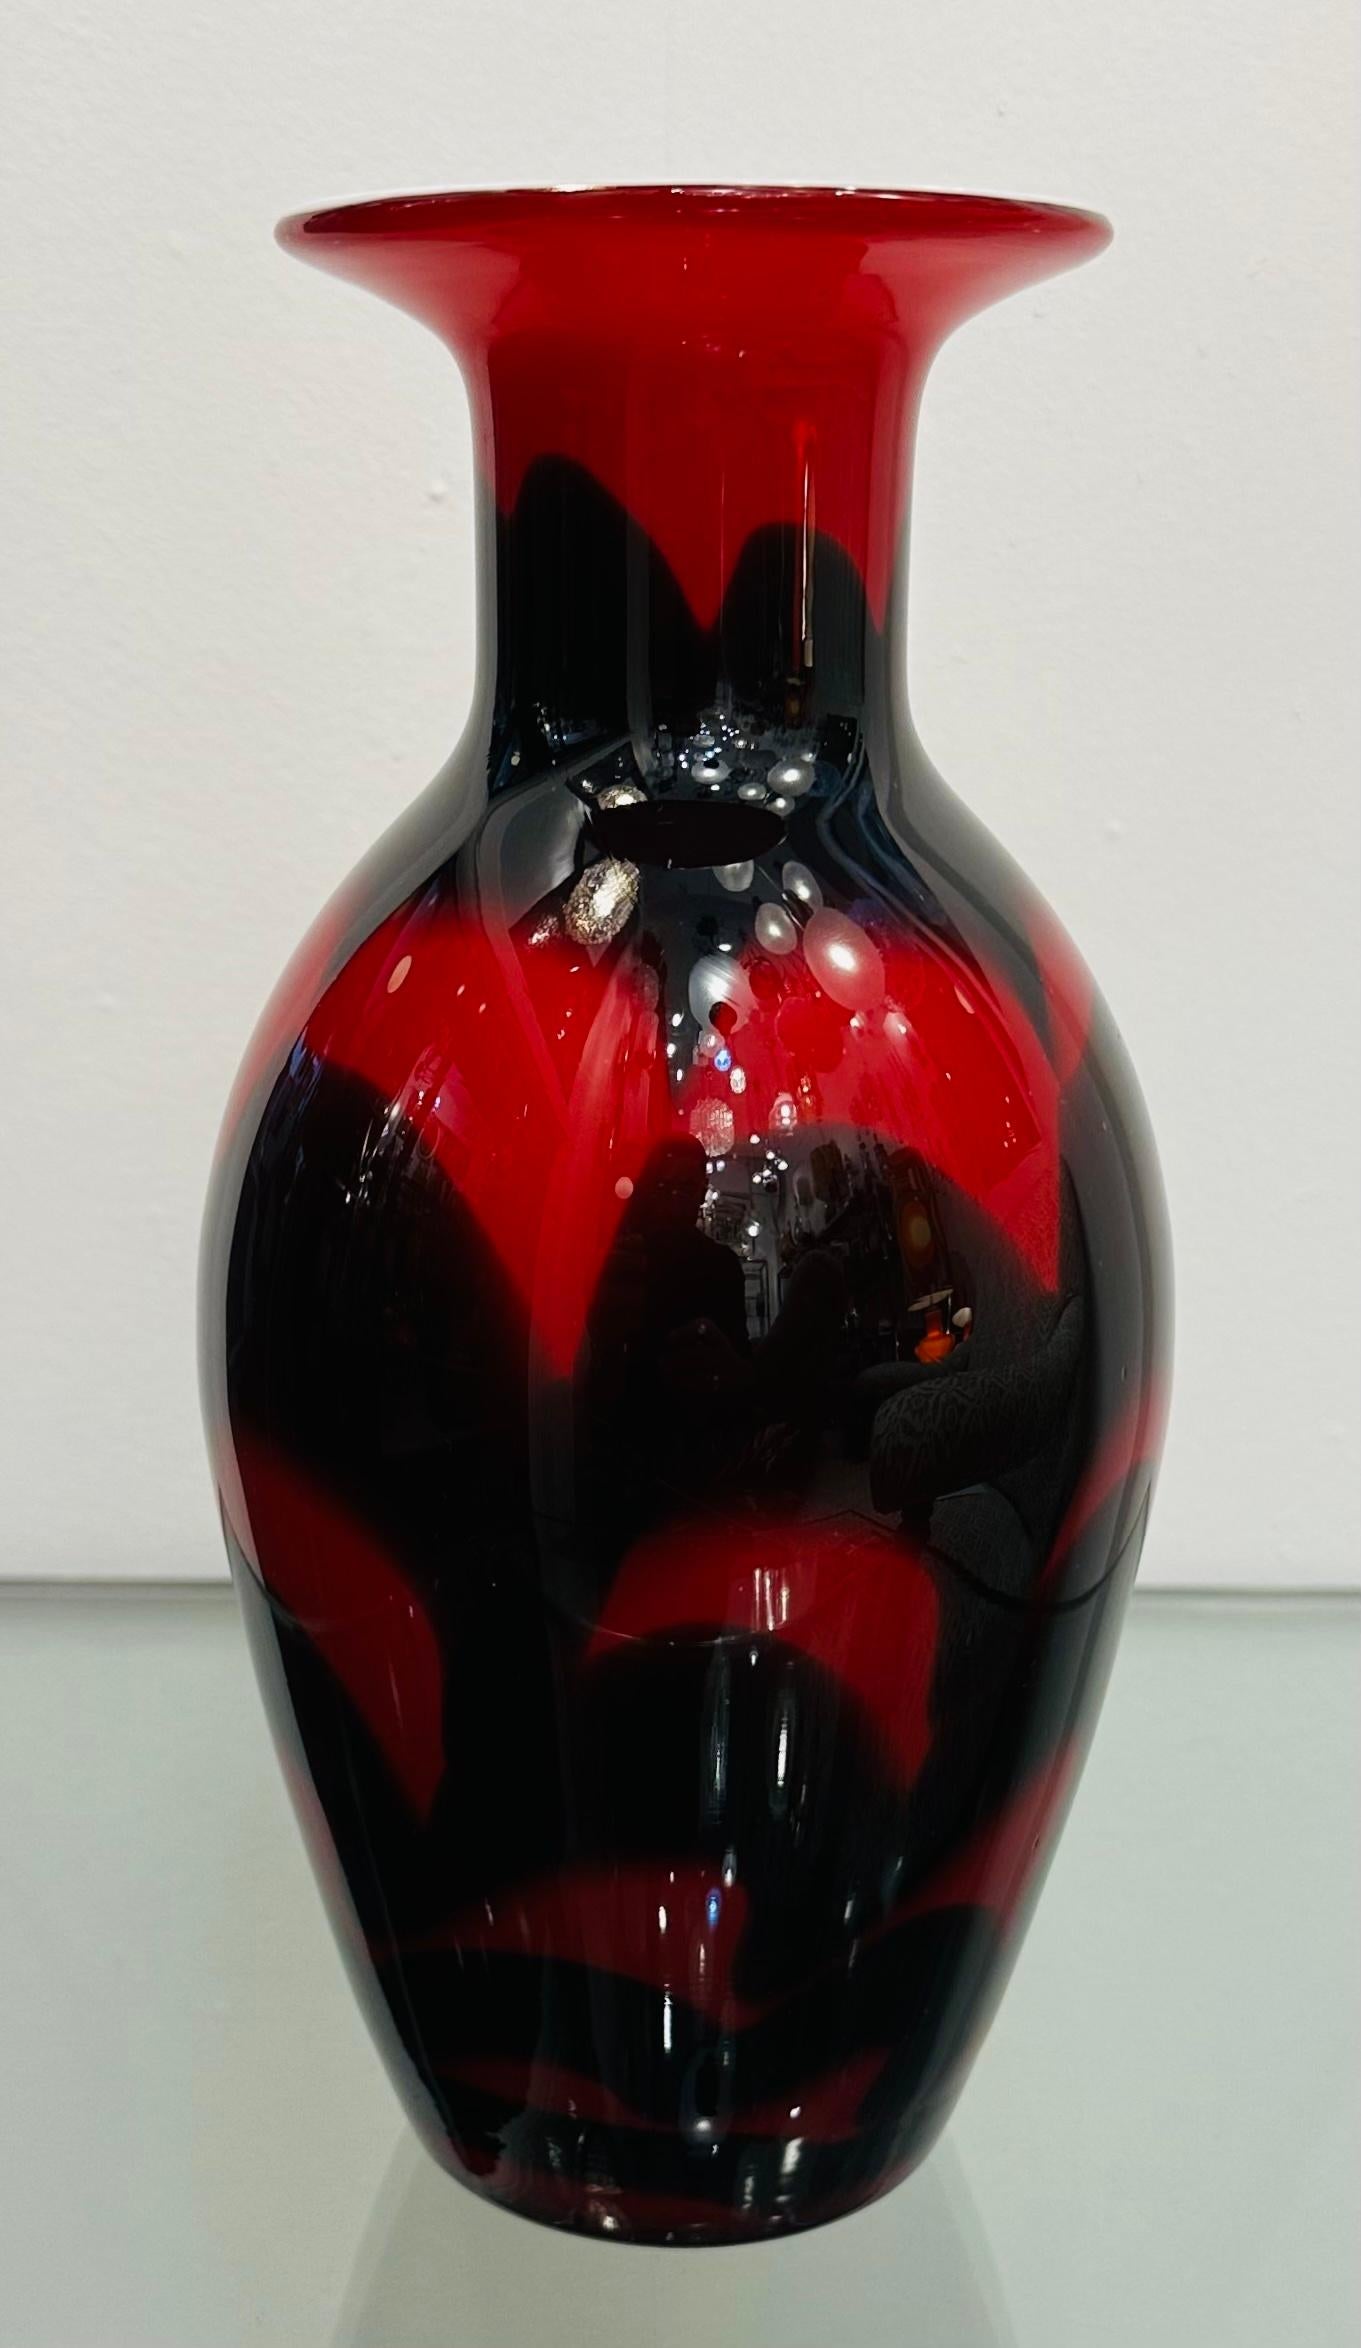 Vase en verre d'art italien de Murano des années 1950, attribué à Carlo Moretti.  Vase en verre rouge recouvert d'un motif abstrait noir avec un intérieur blanc.  Style typique de Moretti.  En très bon état, sans ébréchures, rayures ou